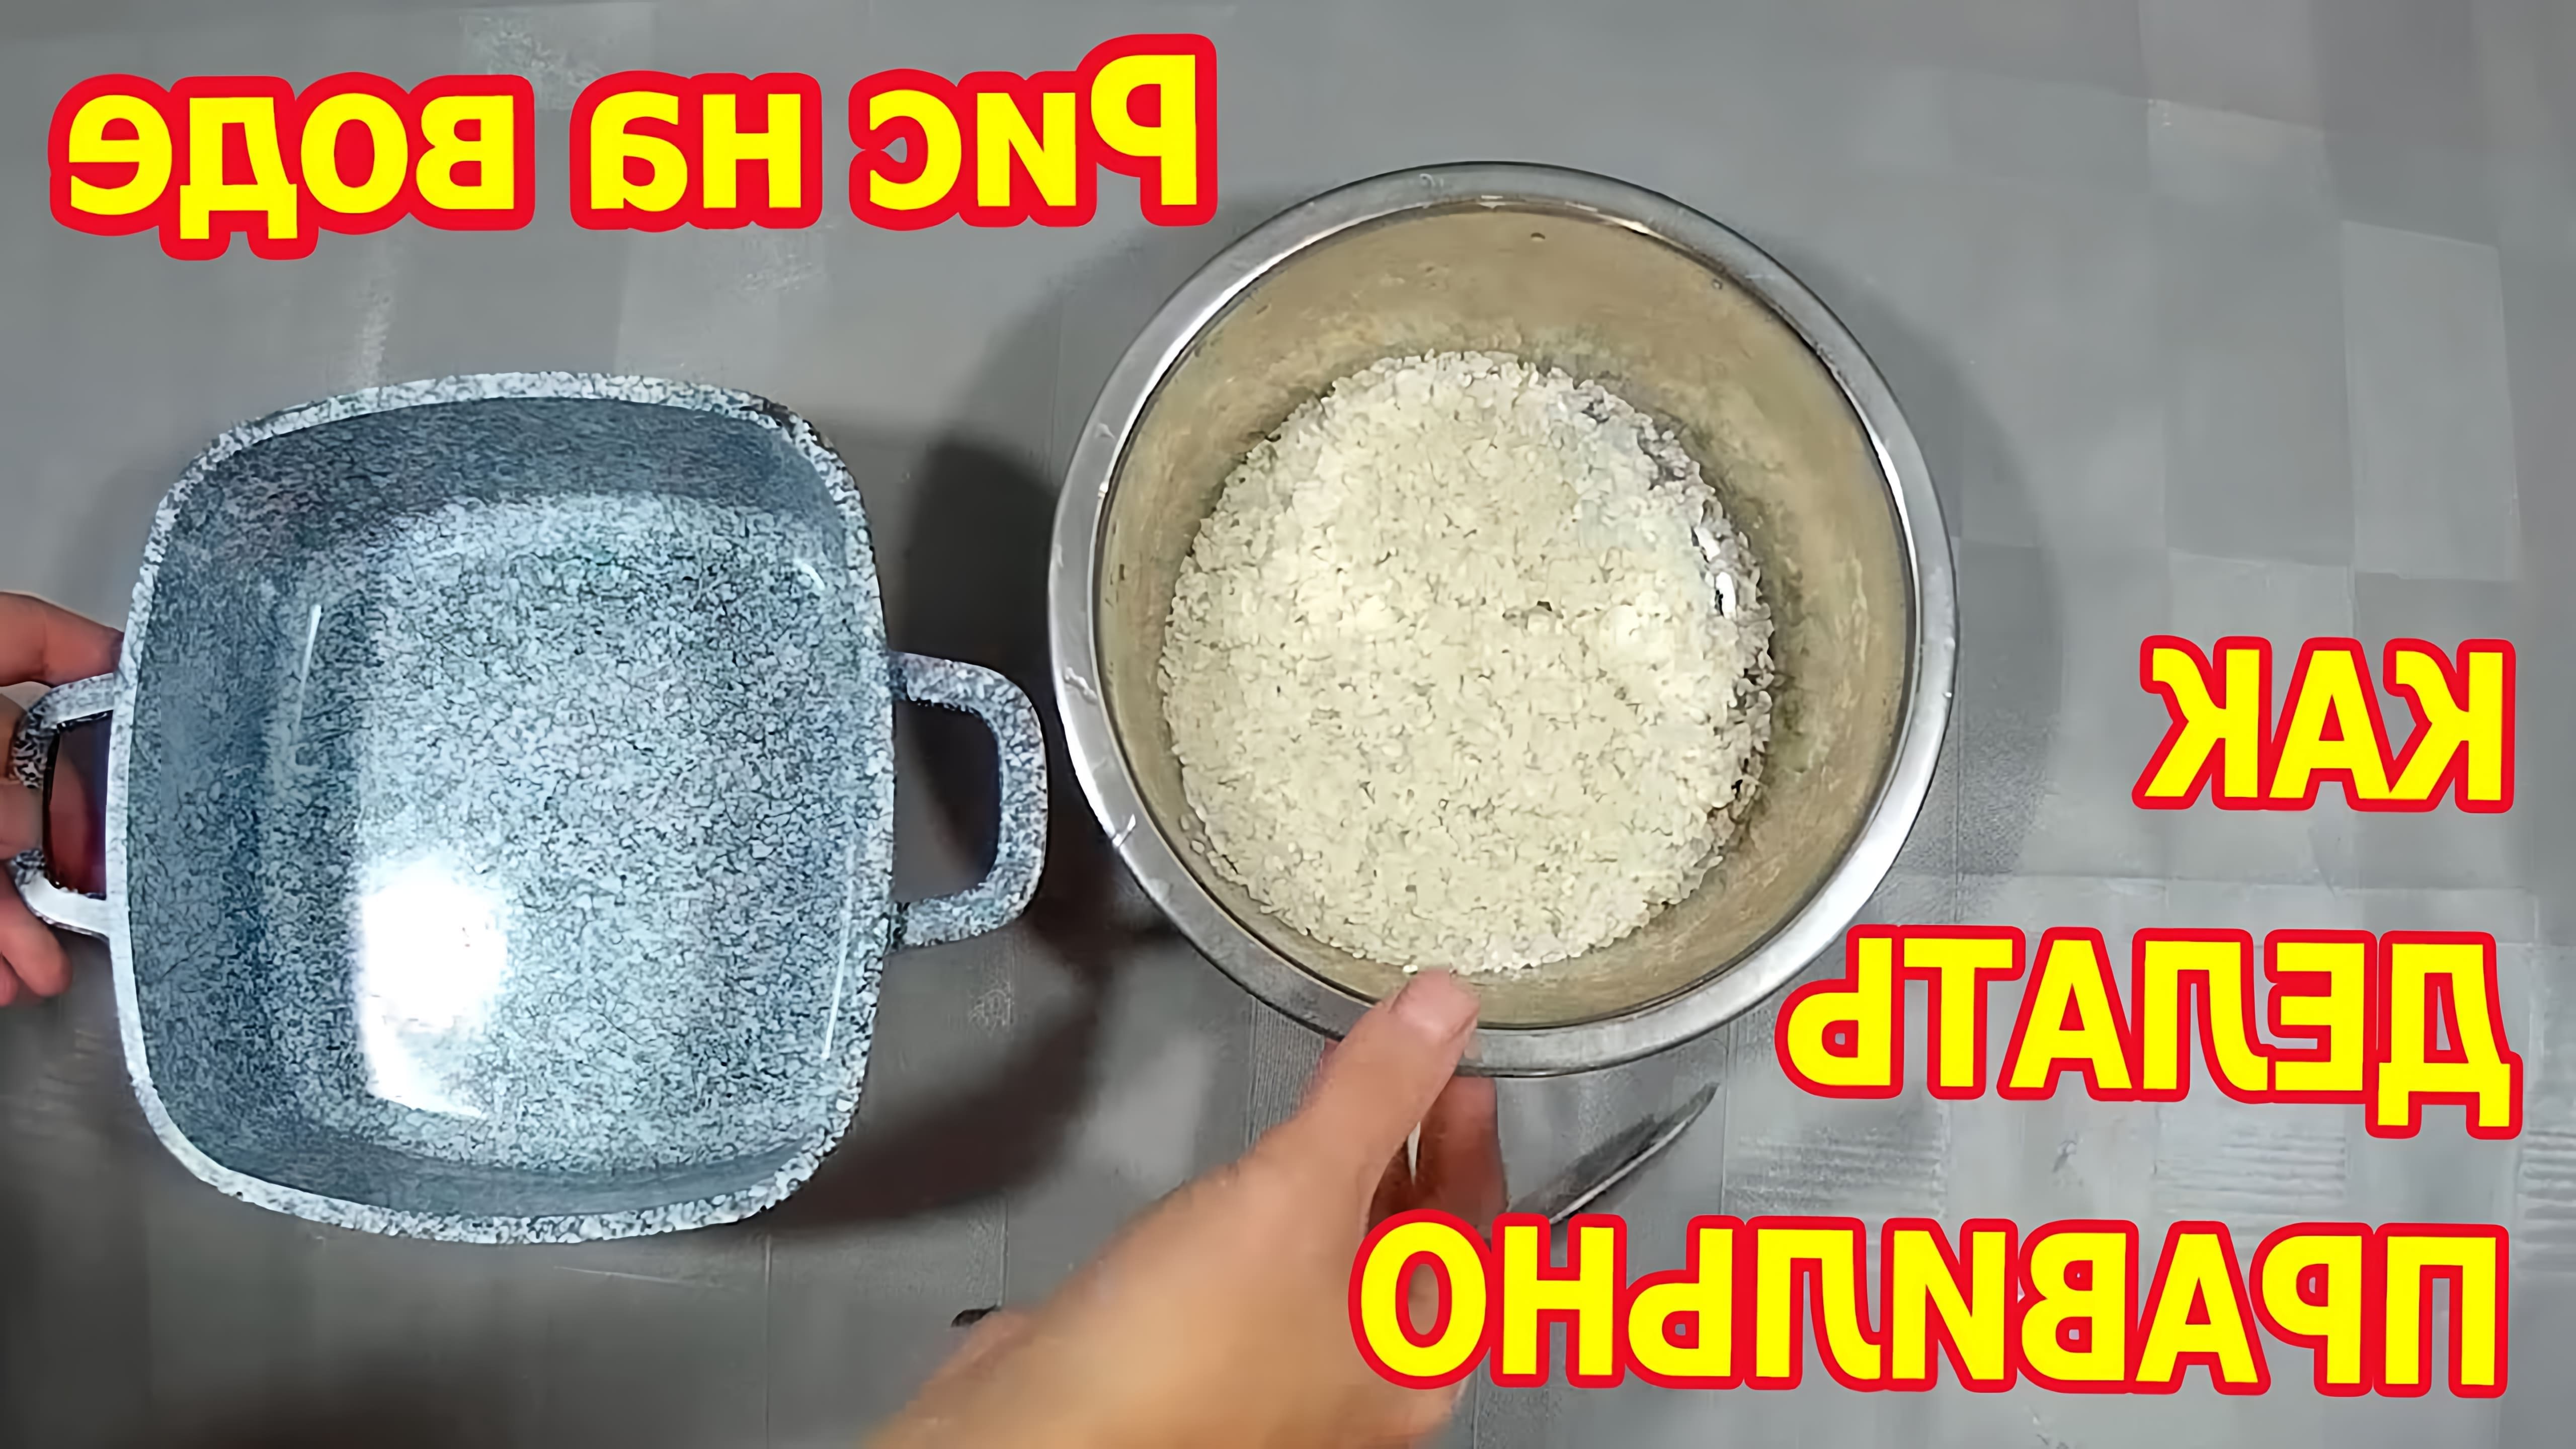 В этом видео-ролике будет рассказано о том, как правильно варить рис на воде, чтобы он получился вкусным и рассыпчатым